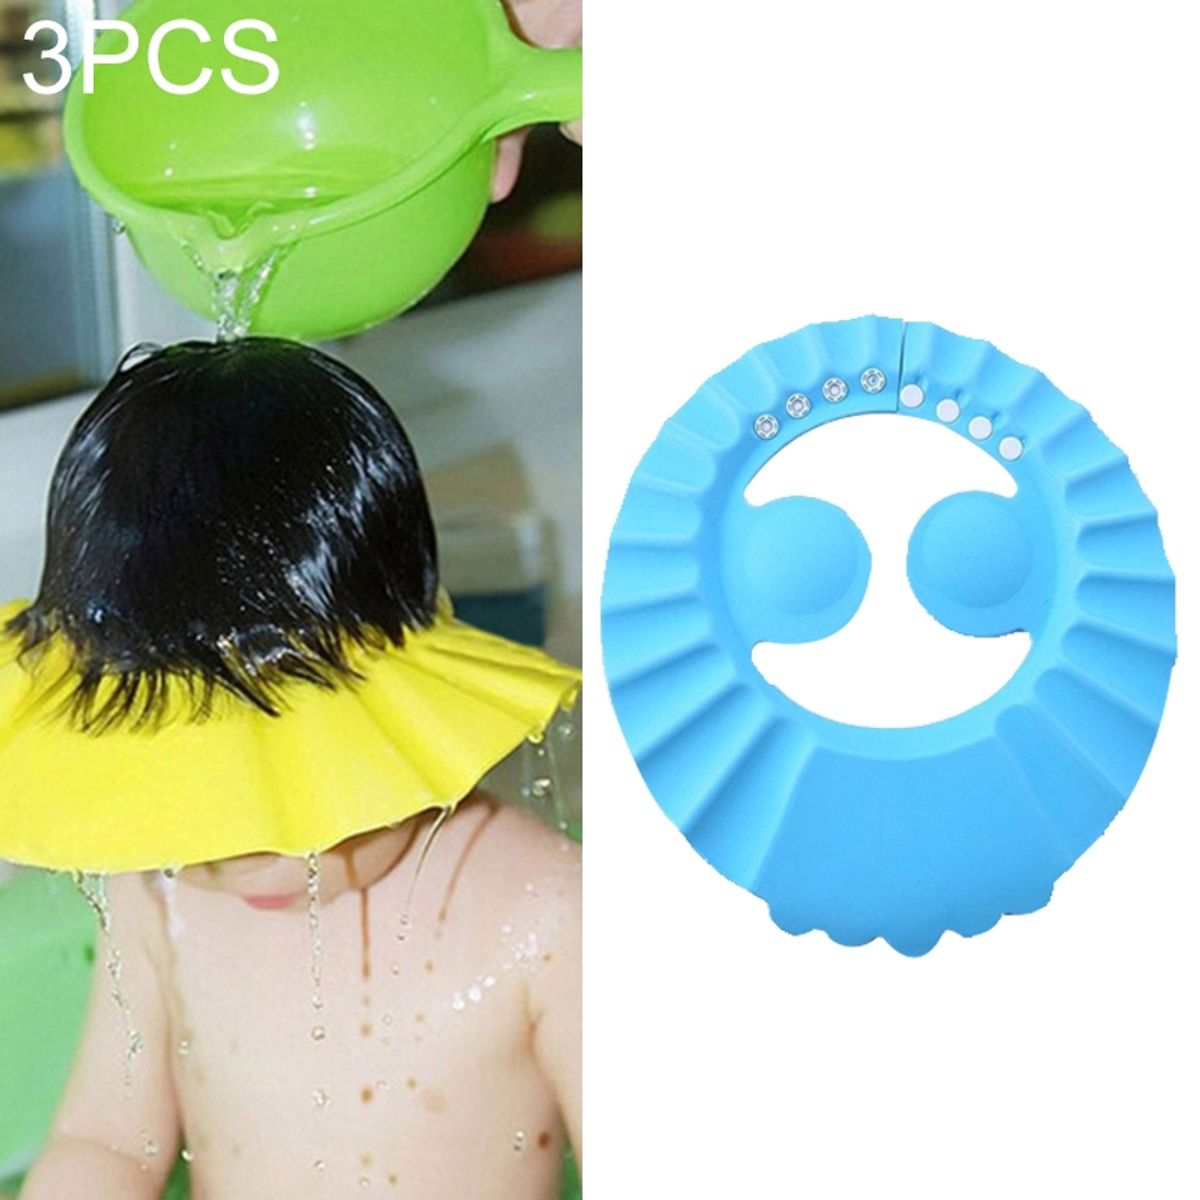 Kaufe Einstellbare Baby Dusche Shampoo Kappe Krone Form Waschen Haar Schild  Hut Für Baby Ohr Schutz Sichere Kinder Dusche Kopf Abdeckung